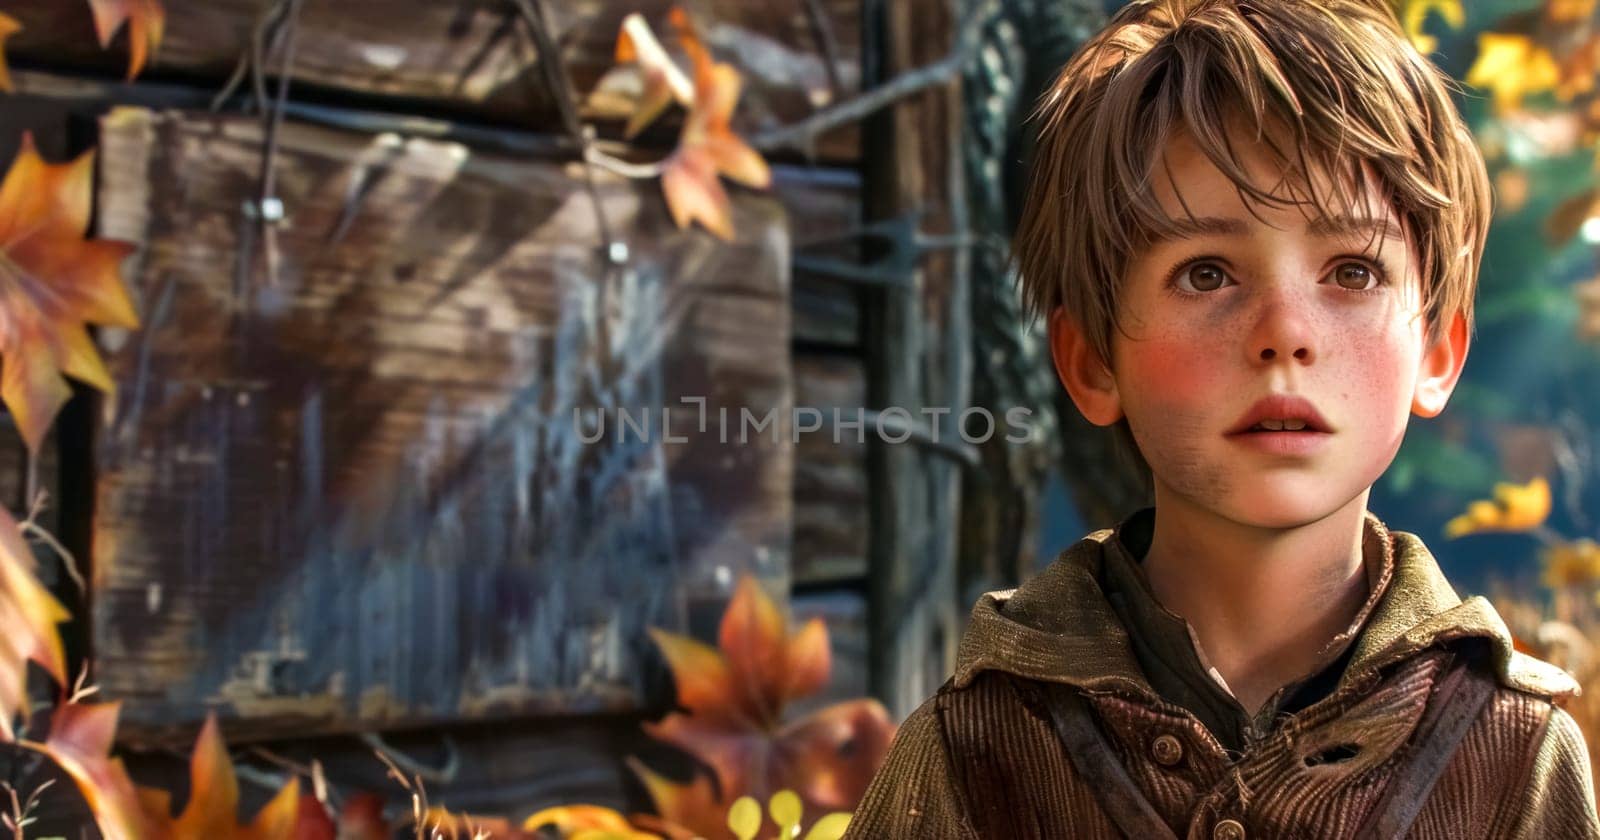 Curious boy in autumn wonderland by Edophoto